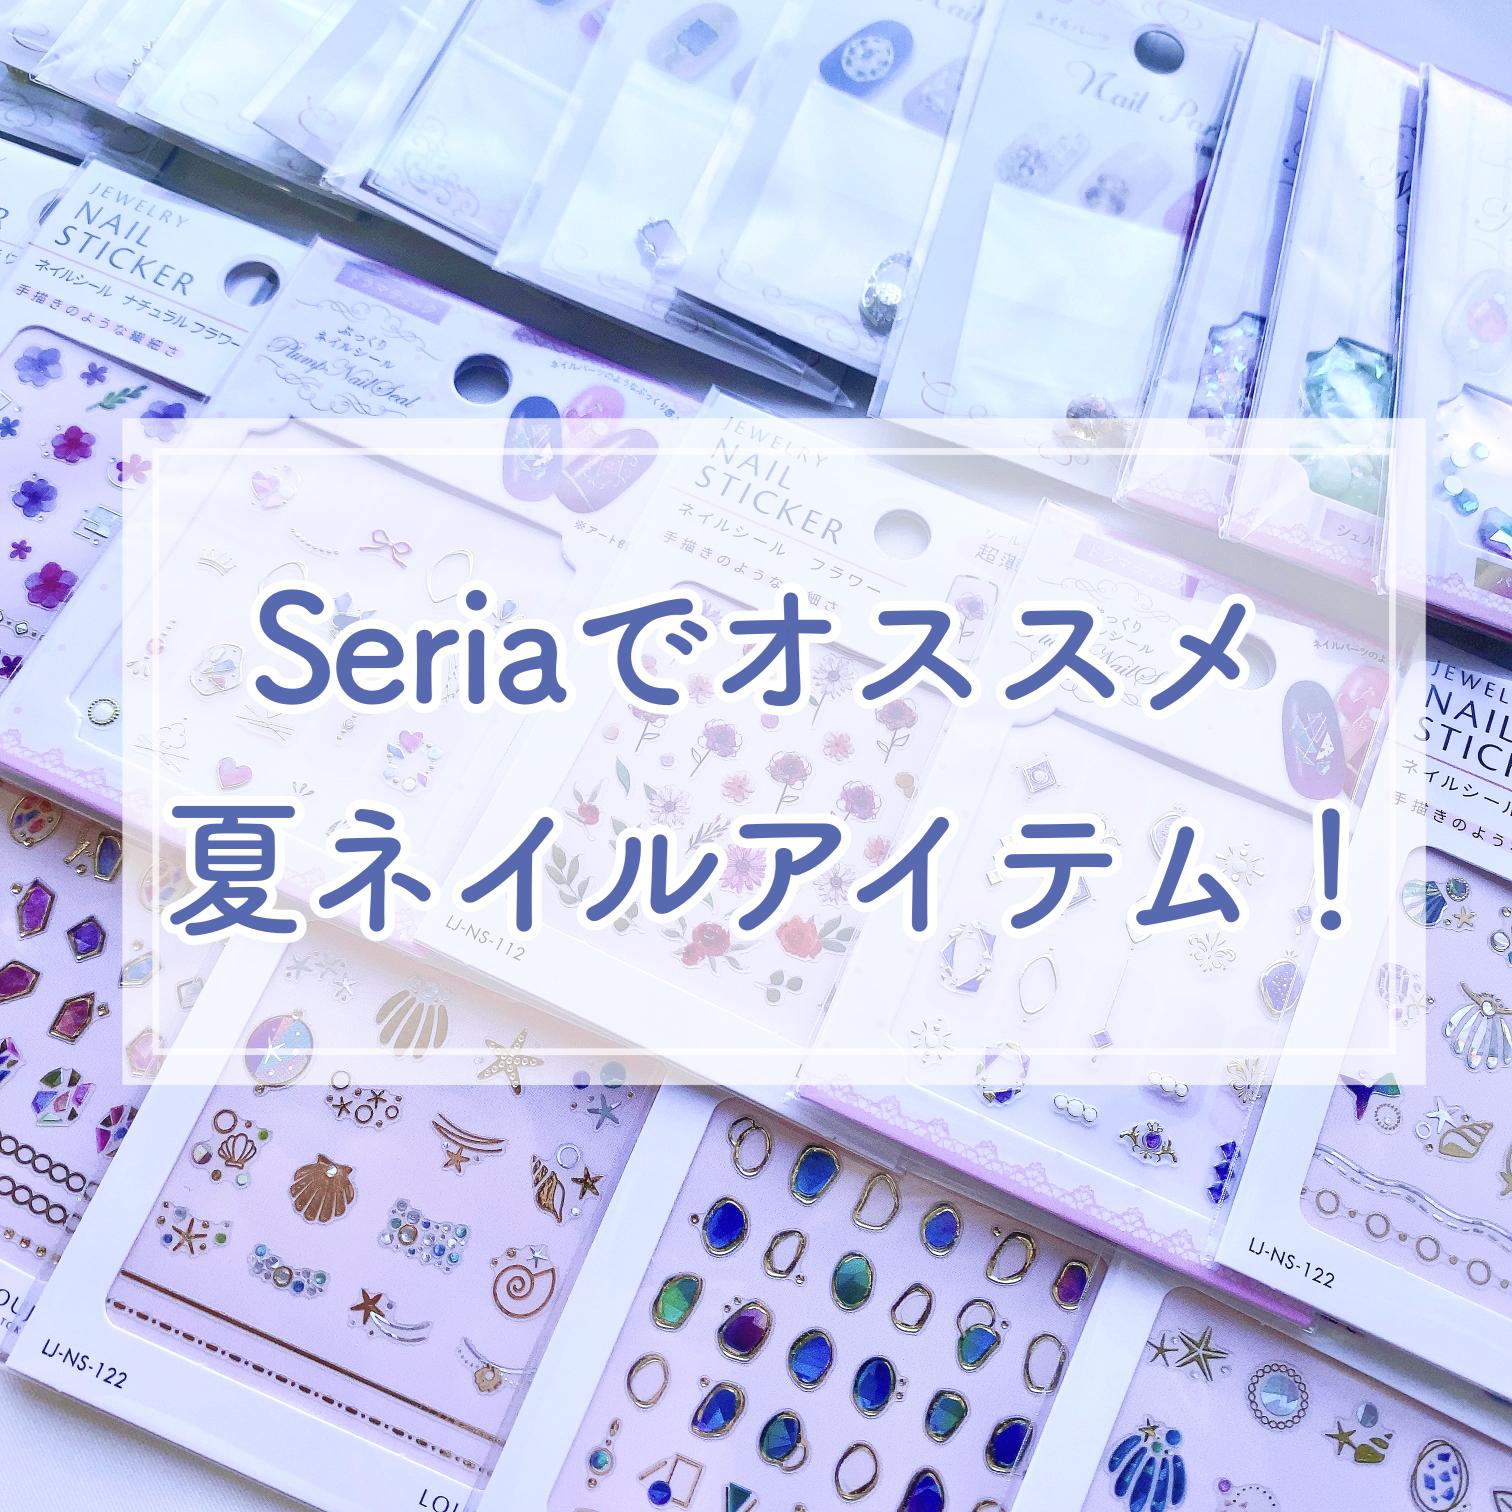 Seriaで買える 夏ネイルにおすすめアイテム Borotamaが投稿したフォトブック Lemon8